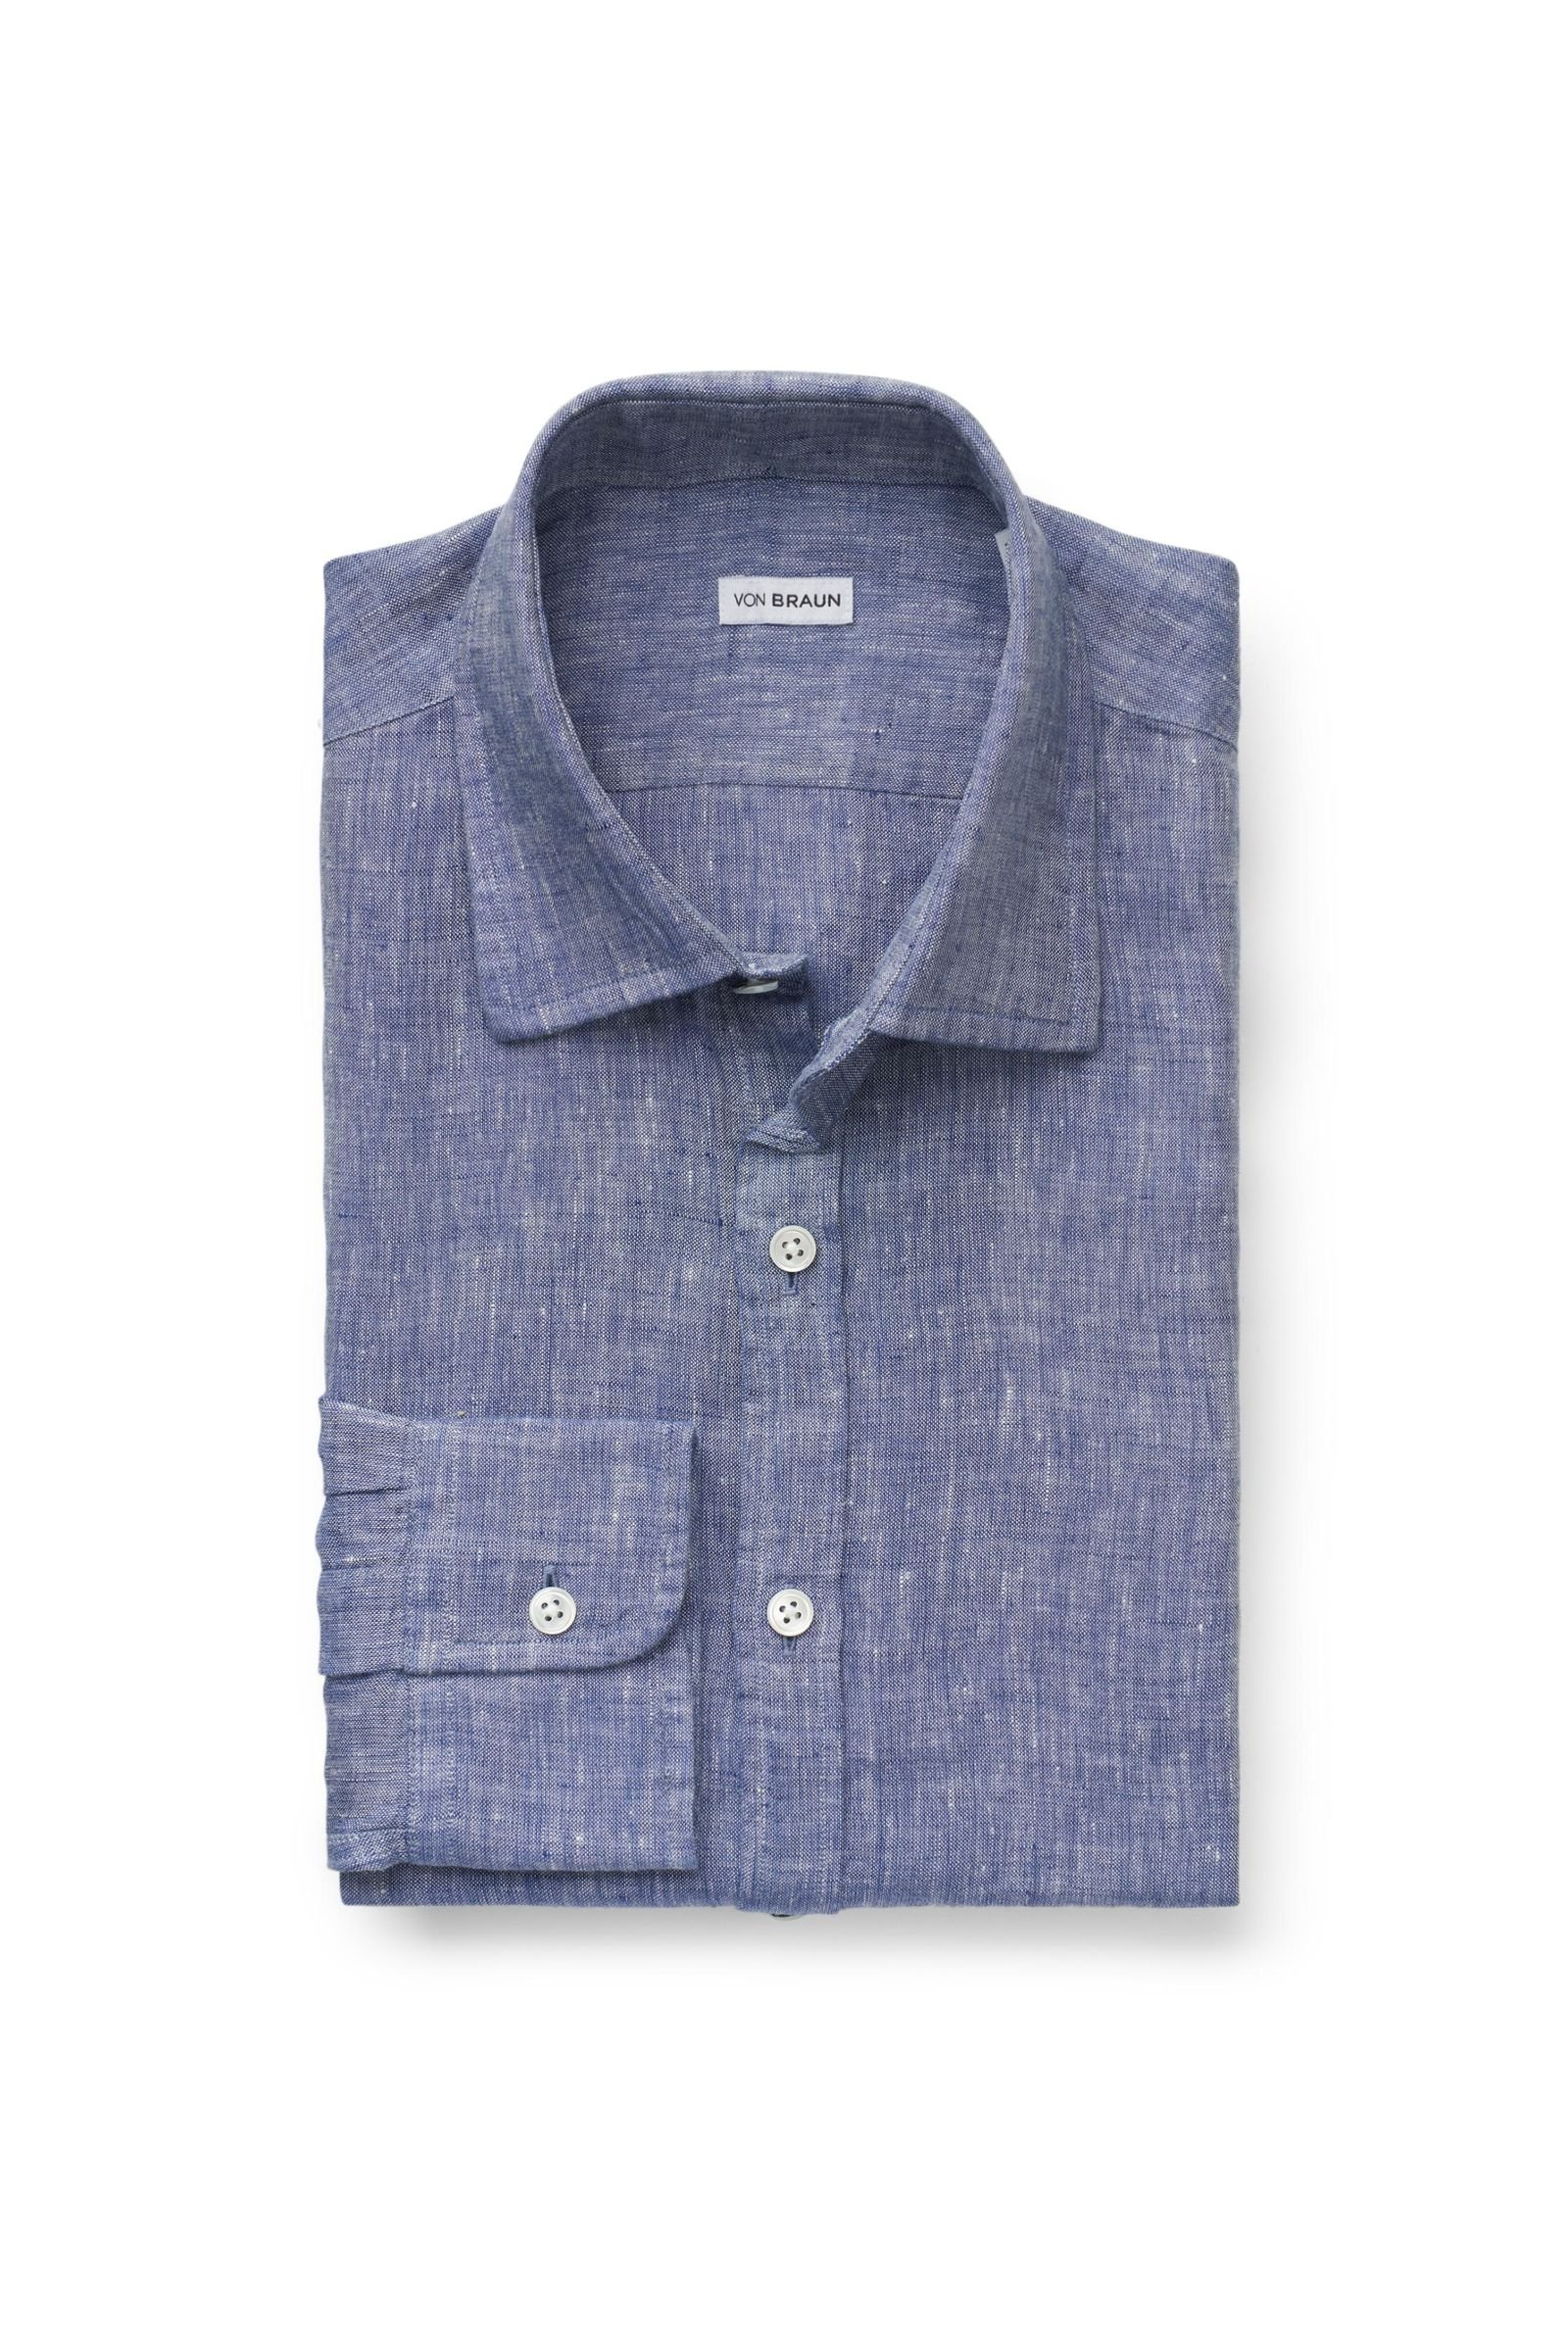 Linen shirt Kent collar grey-blue